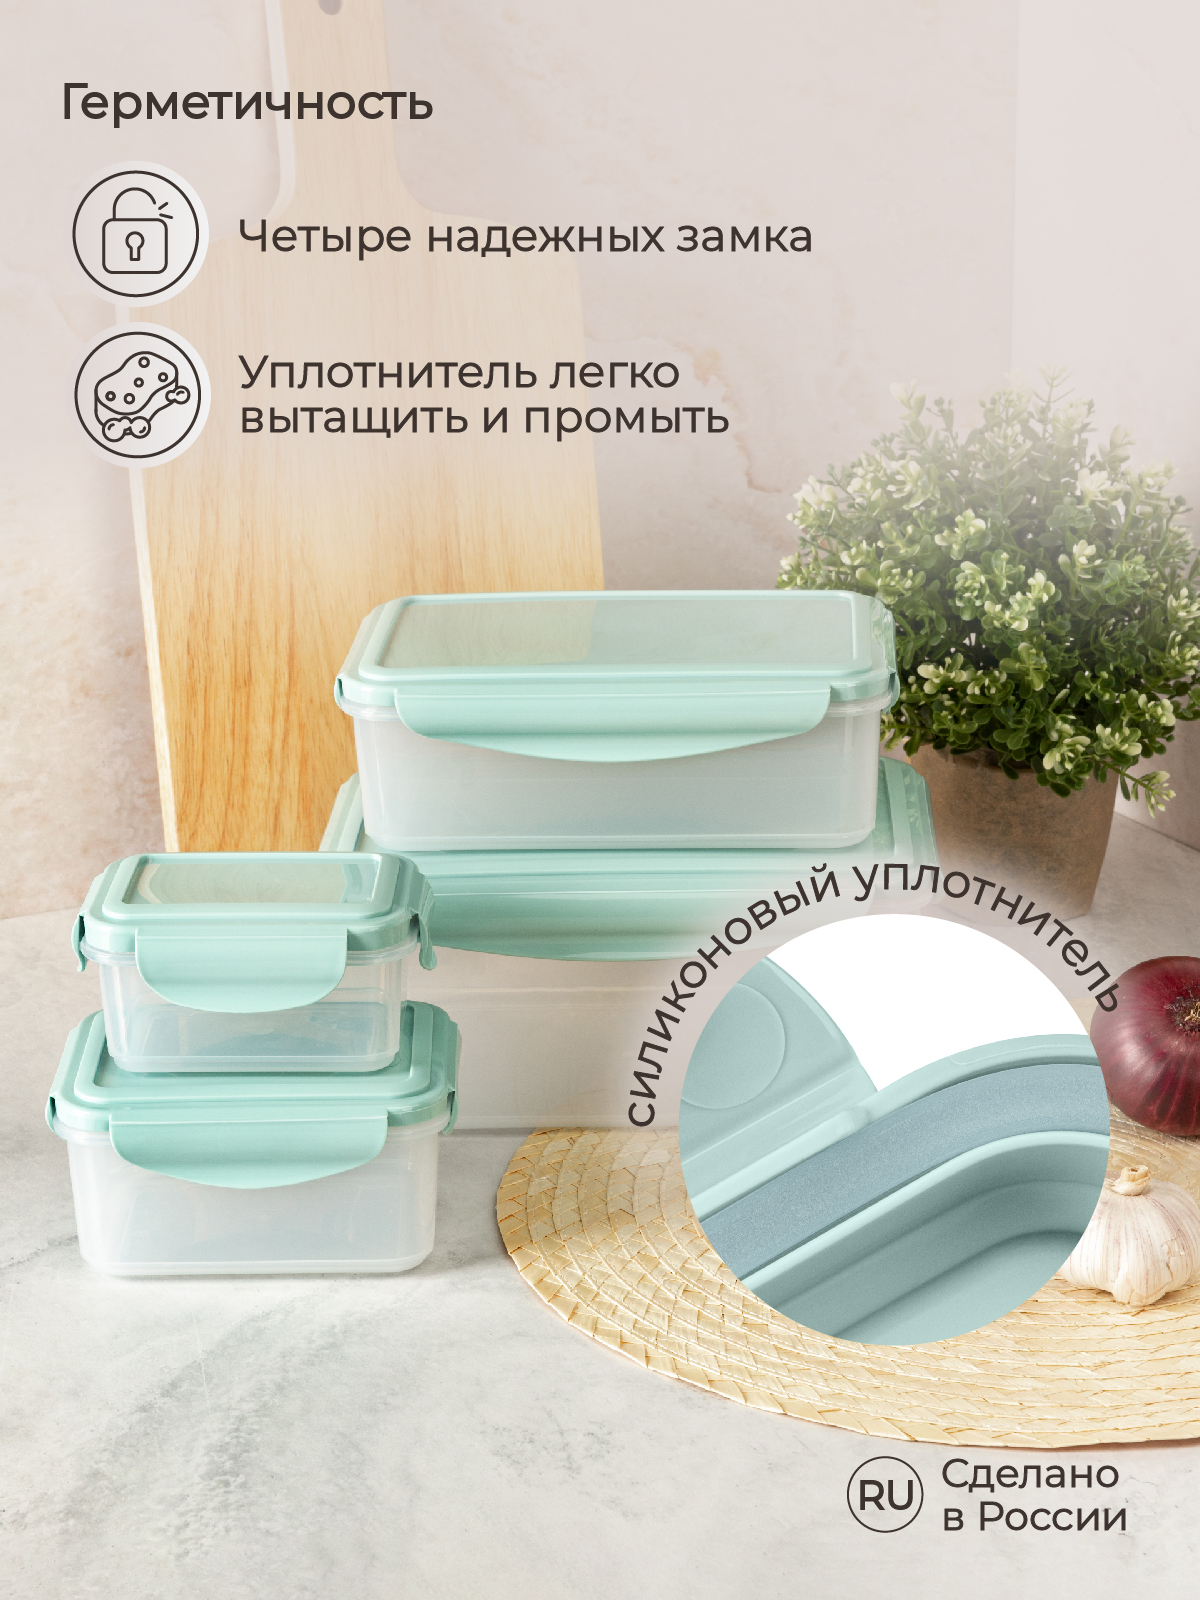 Комплект контейнеров Phibo для холодильника и микроволновой печи Smart Lock 4 шт 2.5л+1.1л+0.5л+0.25л - фото 5